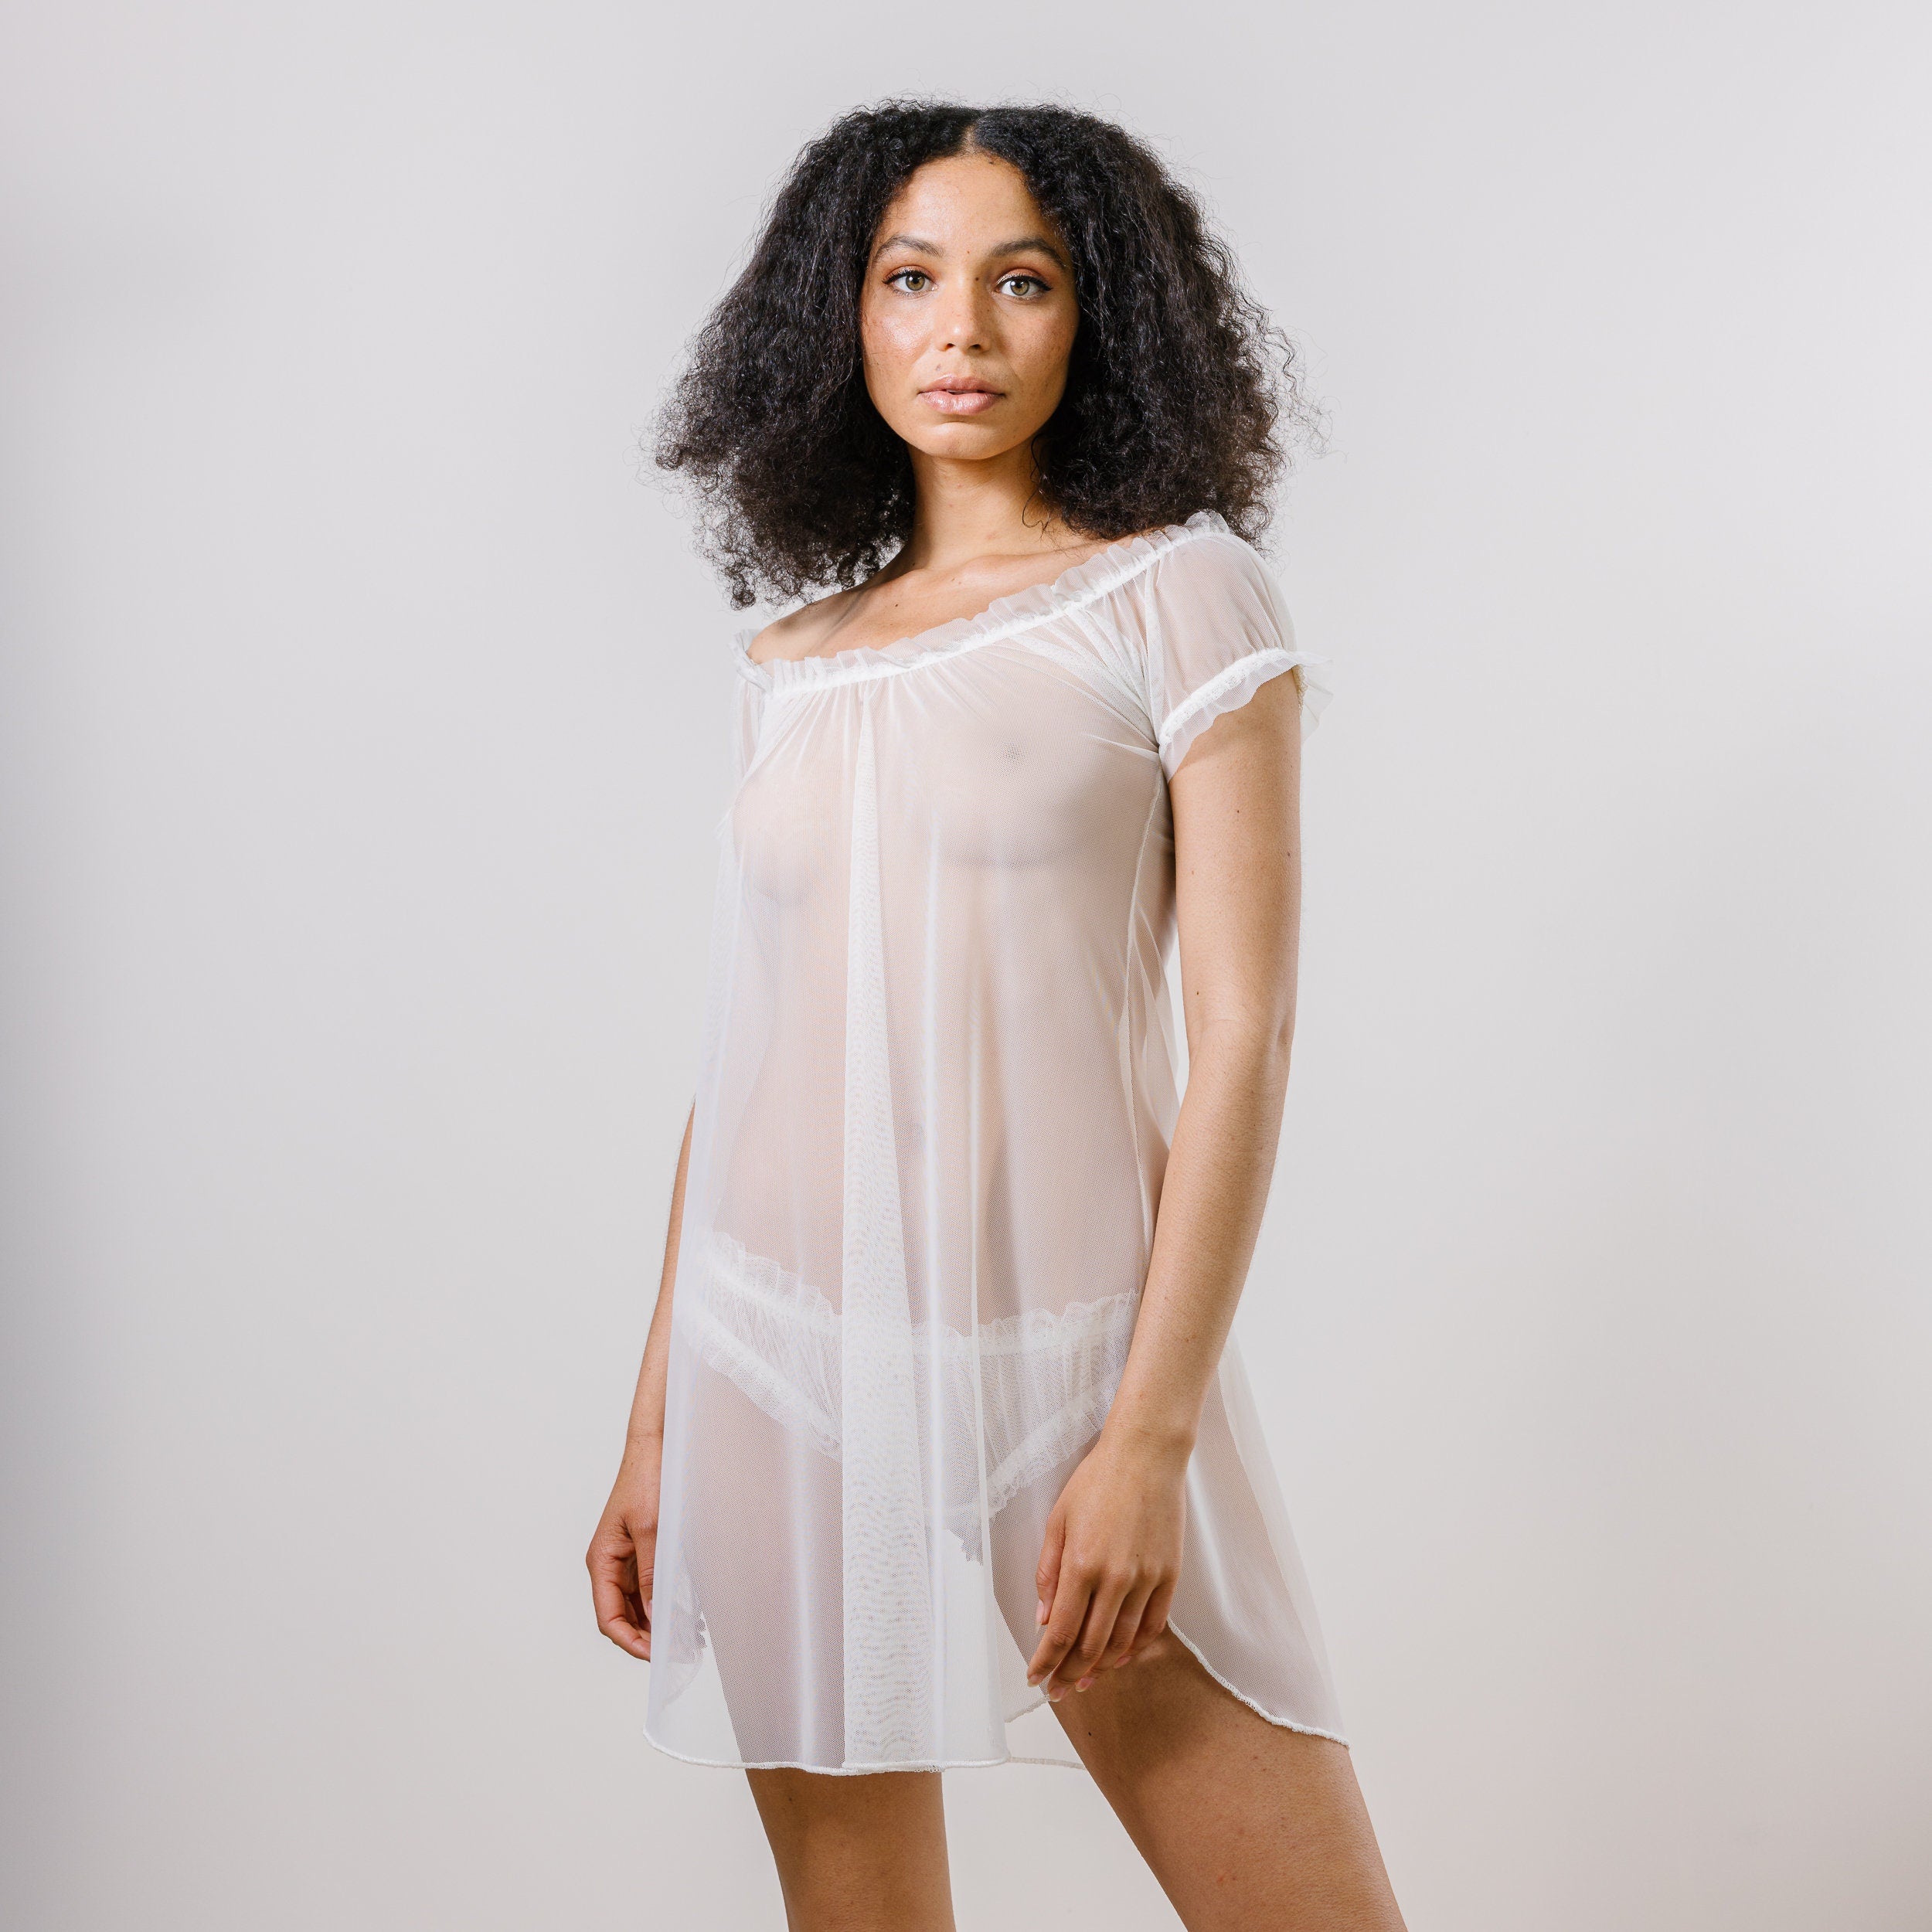 Longline Sheer Bralette with Lace Trim – Sandmaiden Sleepwear